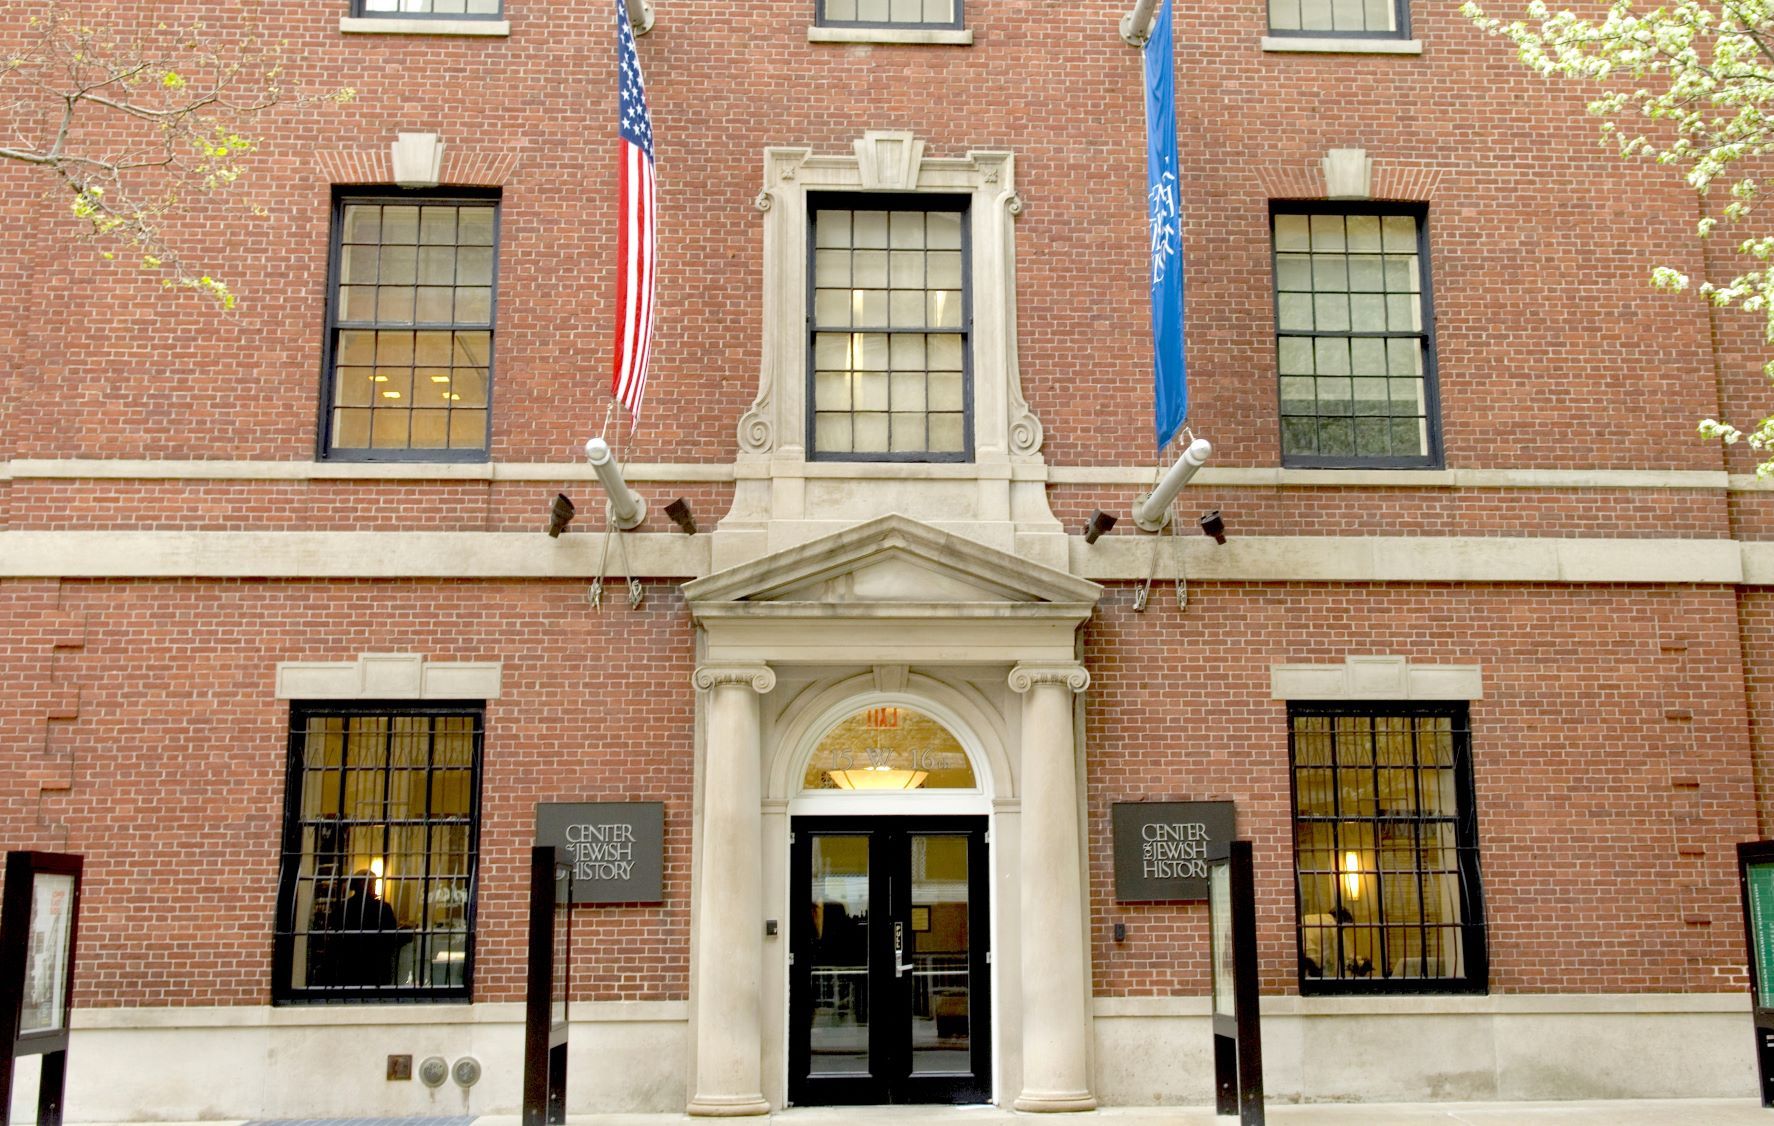 Leo Baeck Institute, New York